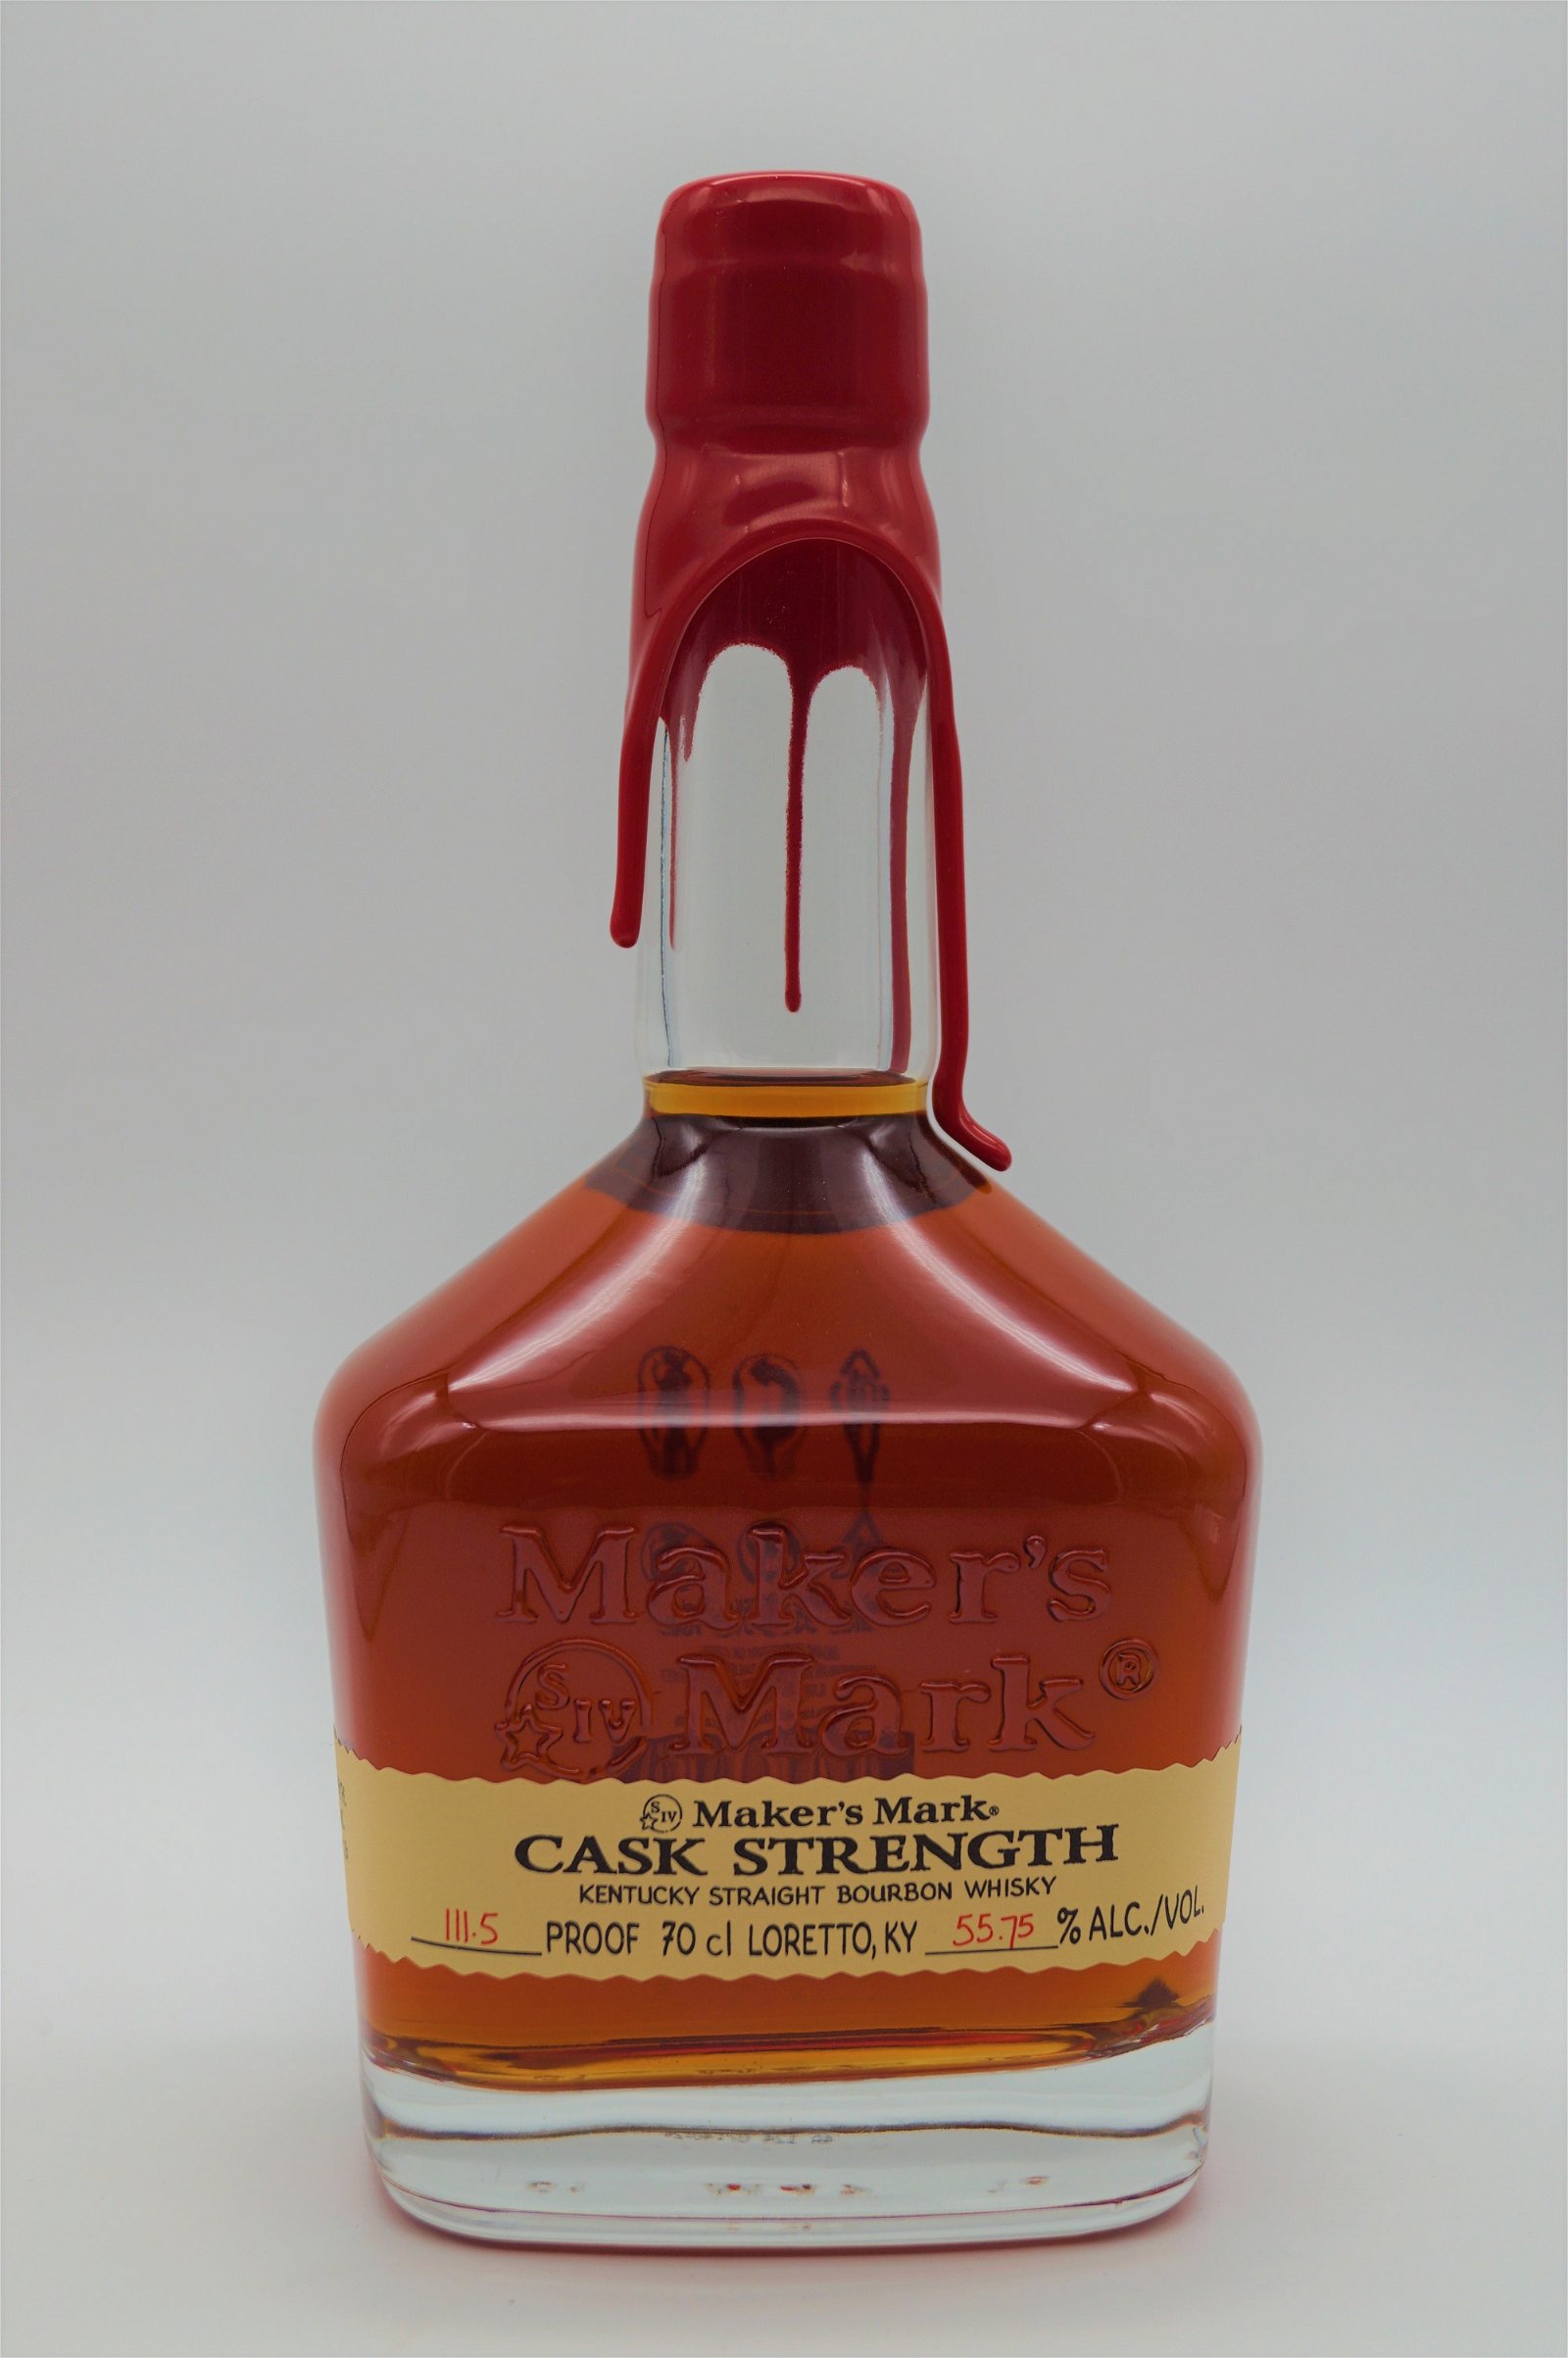 Makers Mark Cask Strength Kentucky Straight Bourbon 111,5 Proof